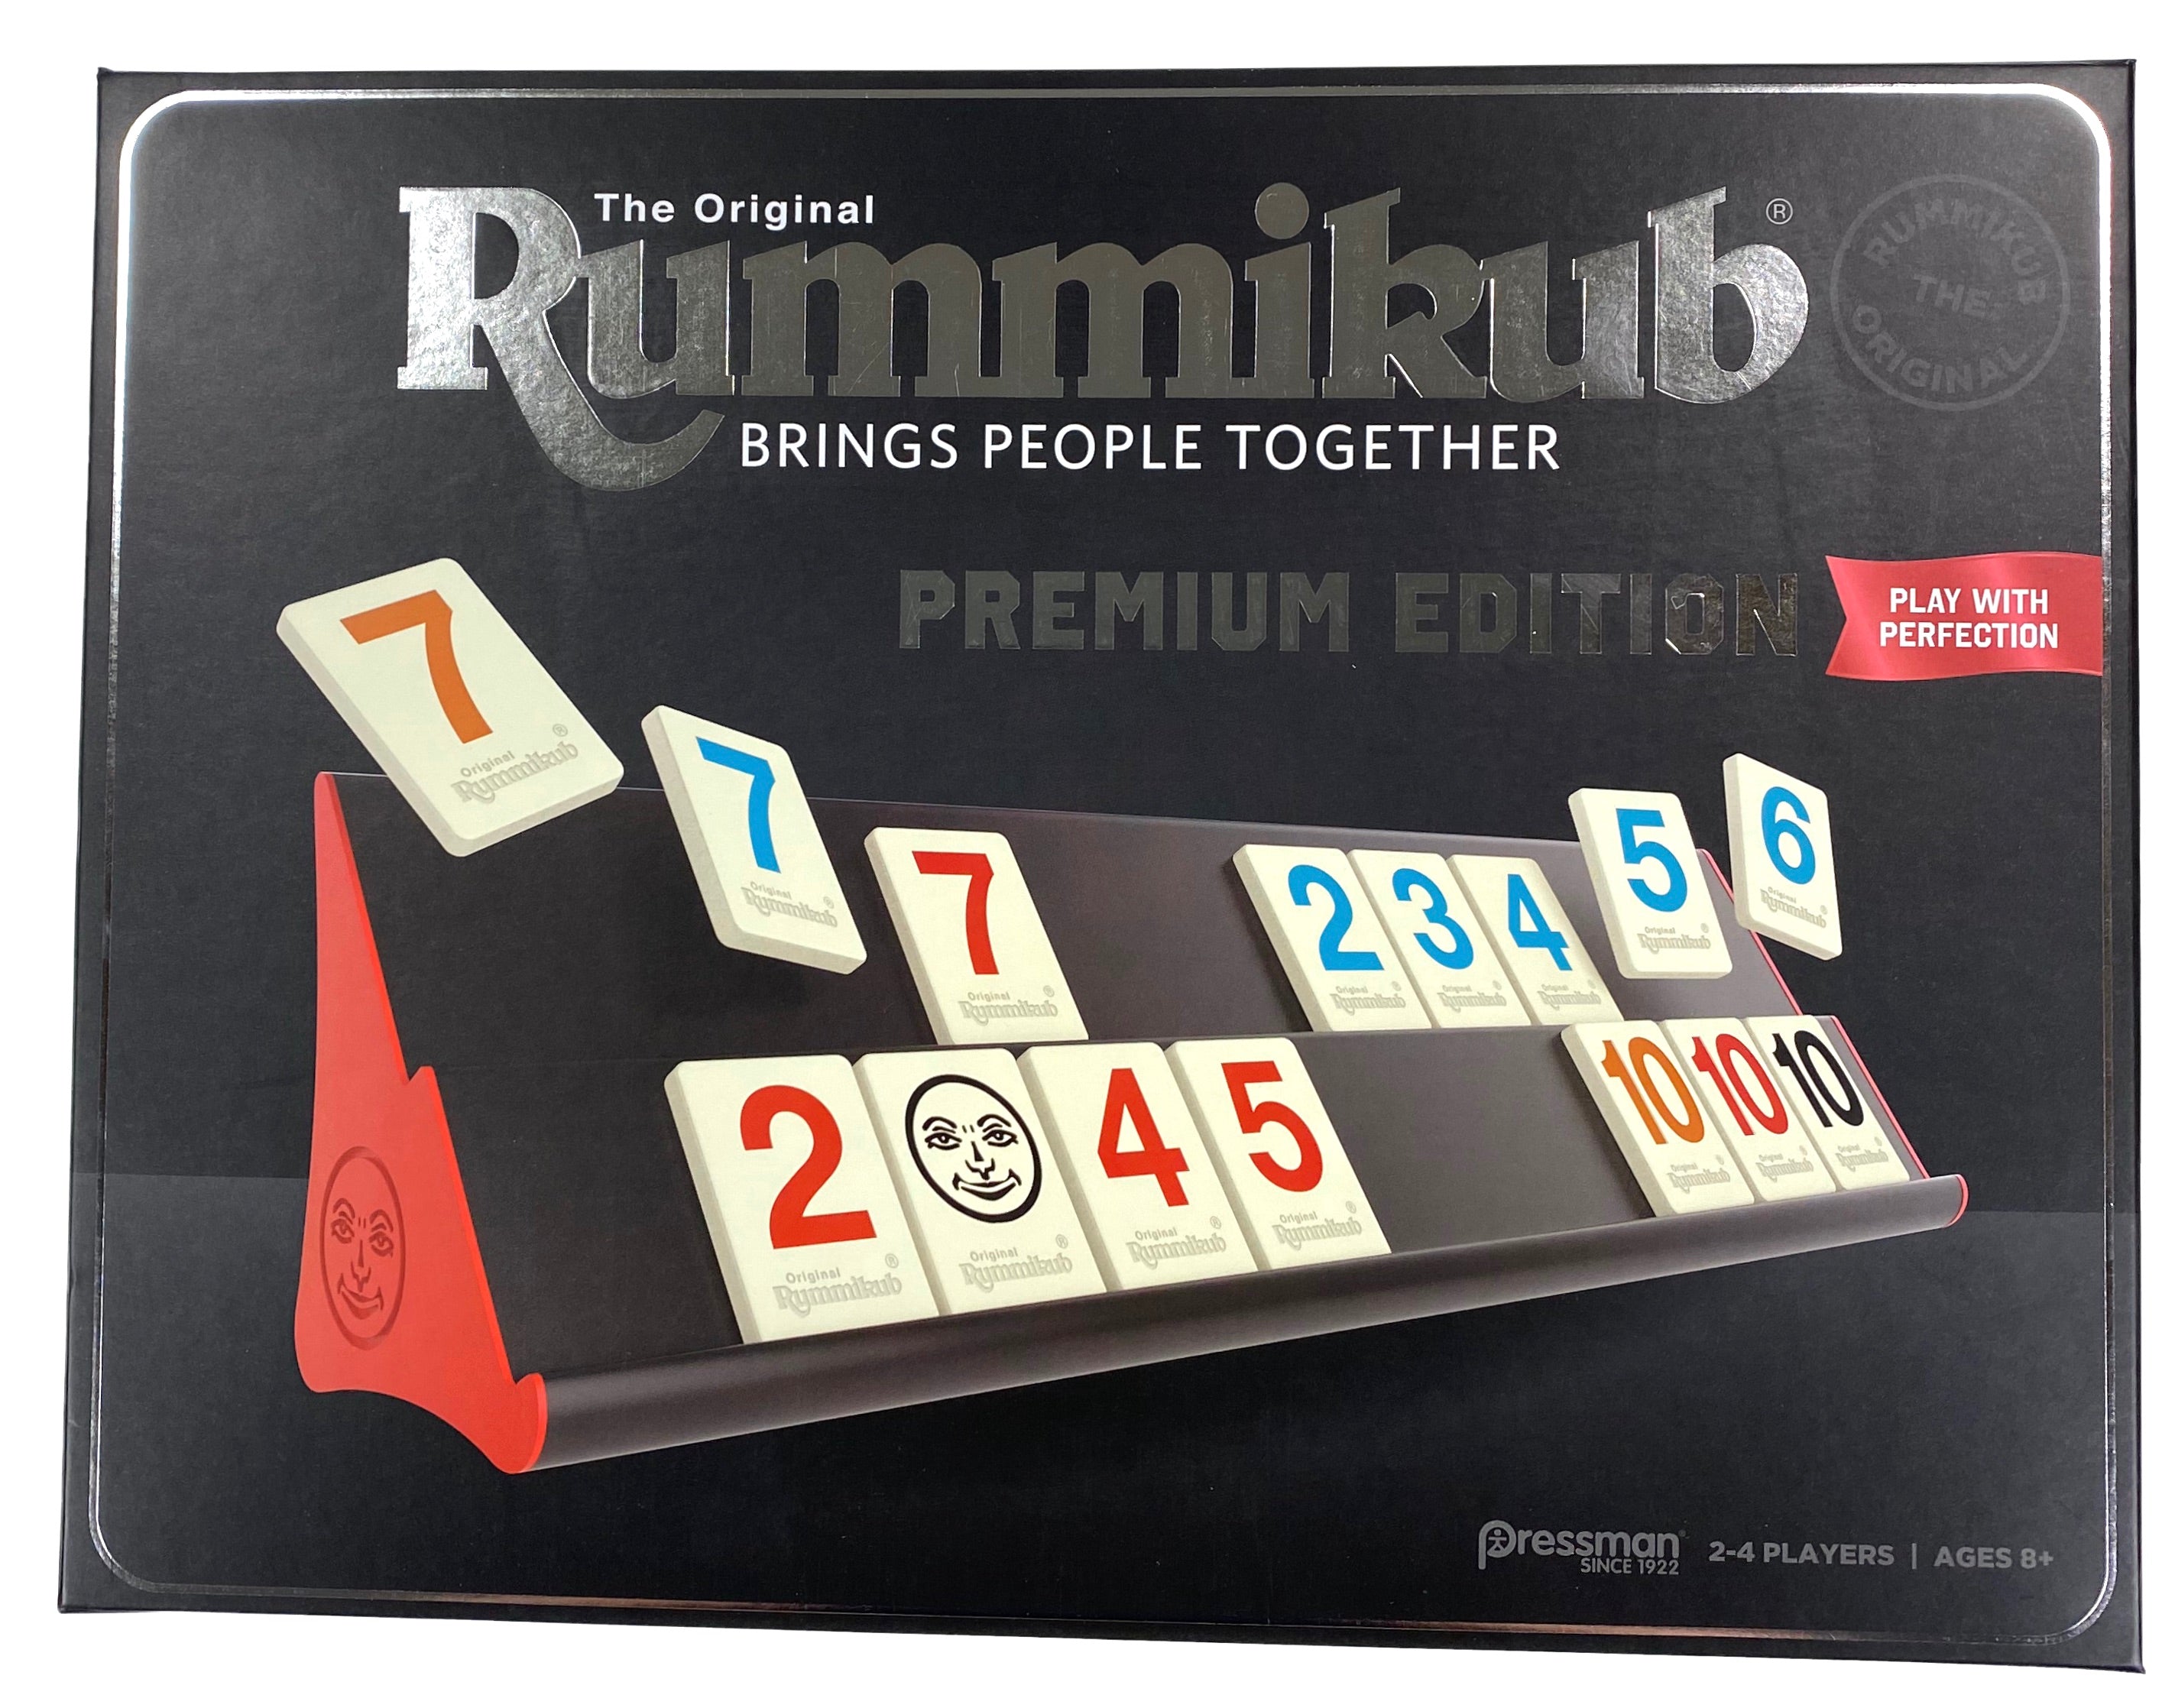 Rummikub Premium Edition    